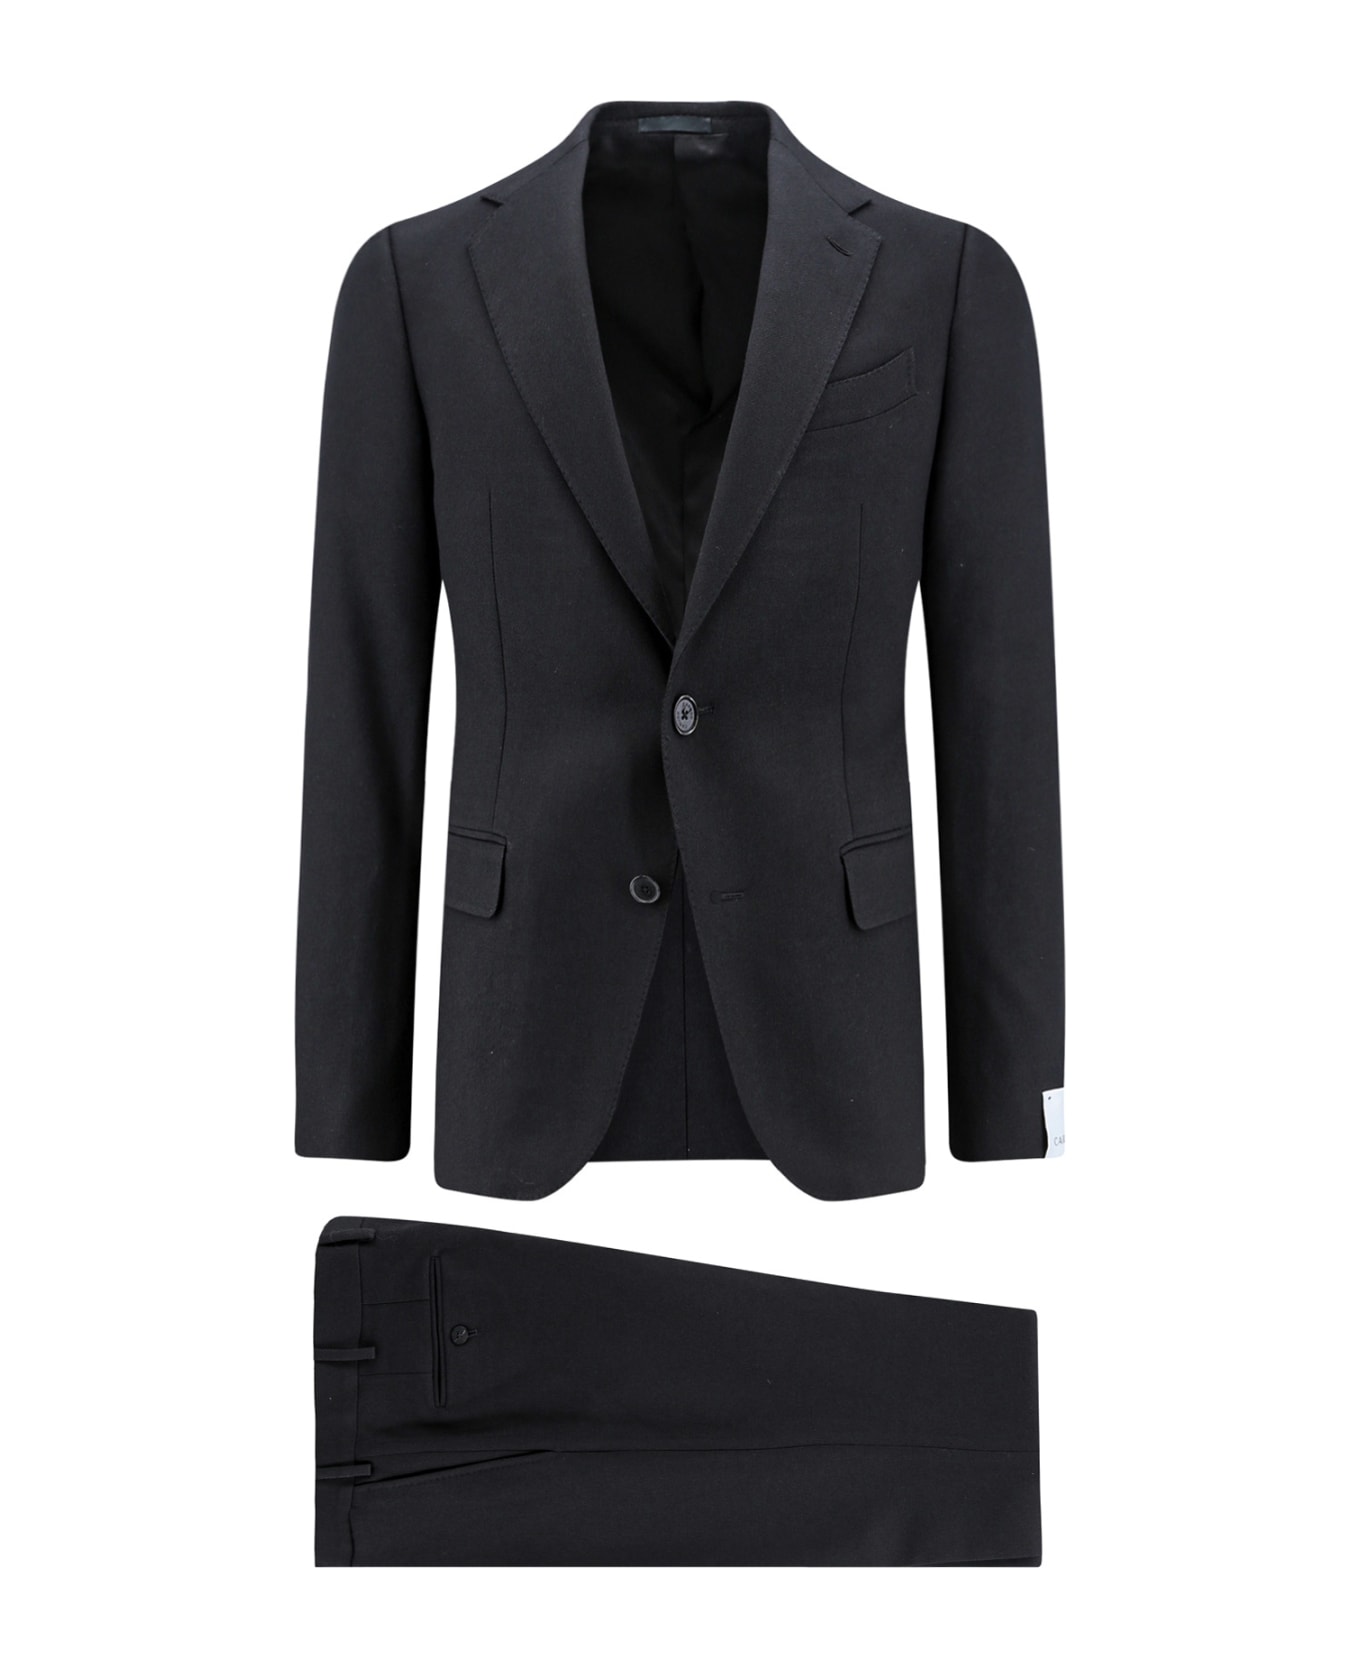 Caruso Suit - Black